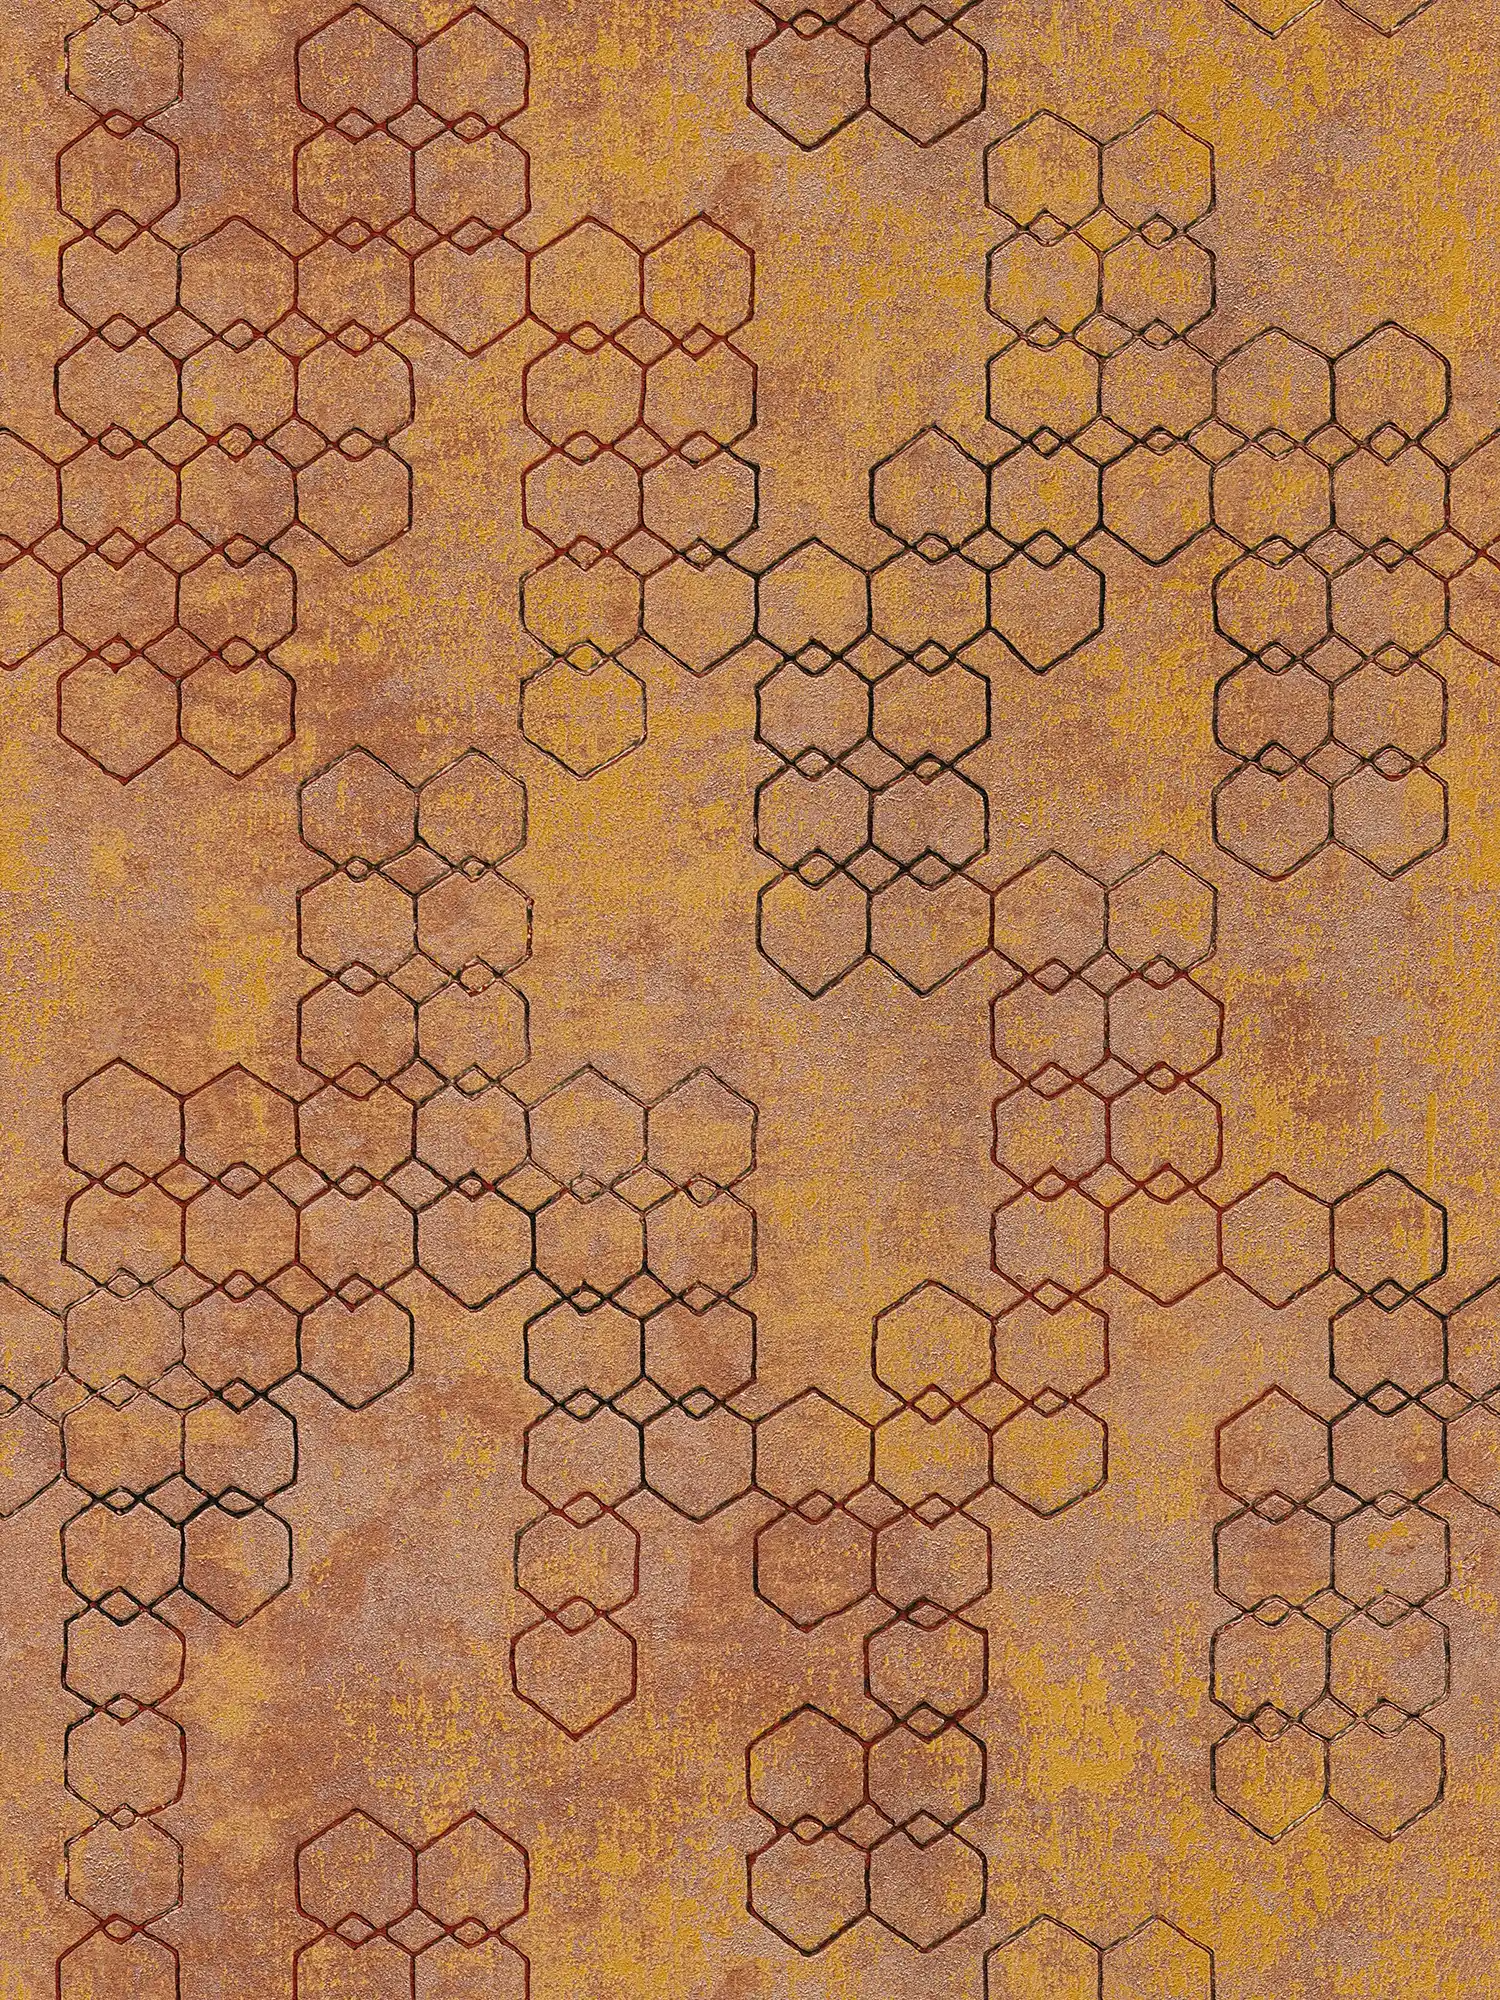 Papier peint à motifs géométriques de style industriel - orange, or, marron
